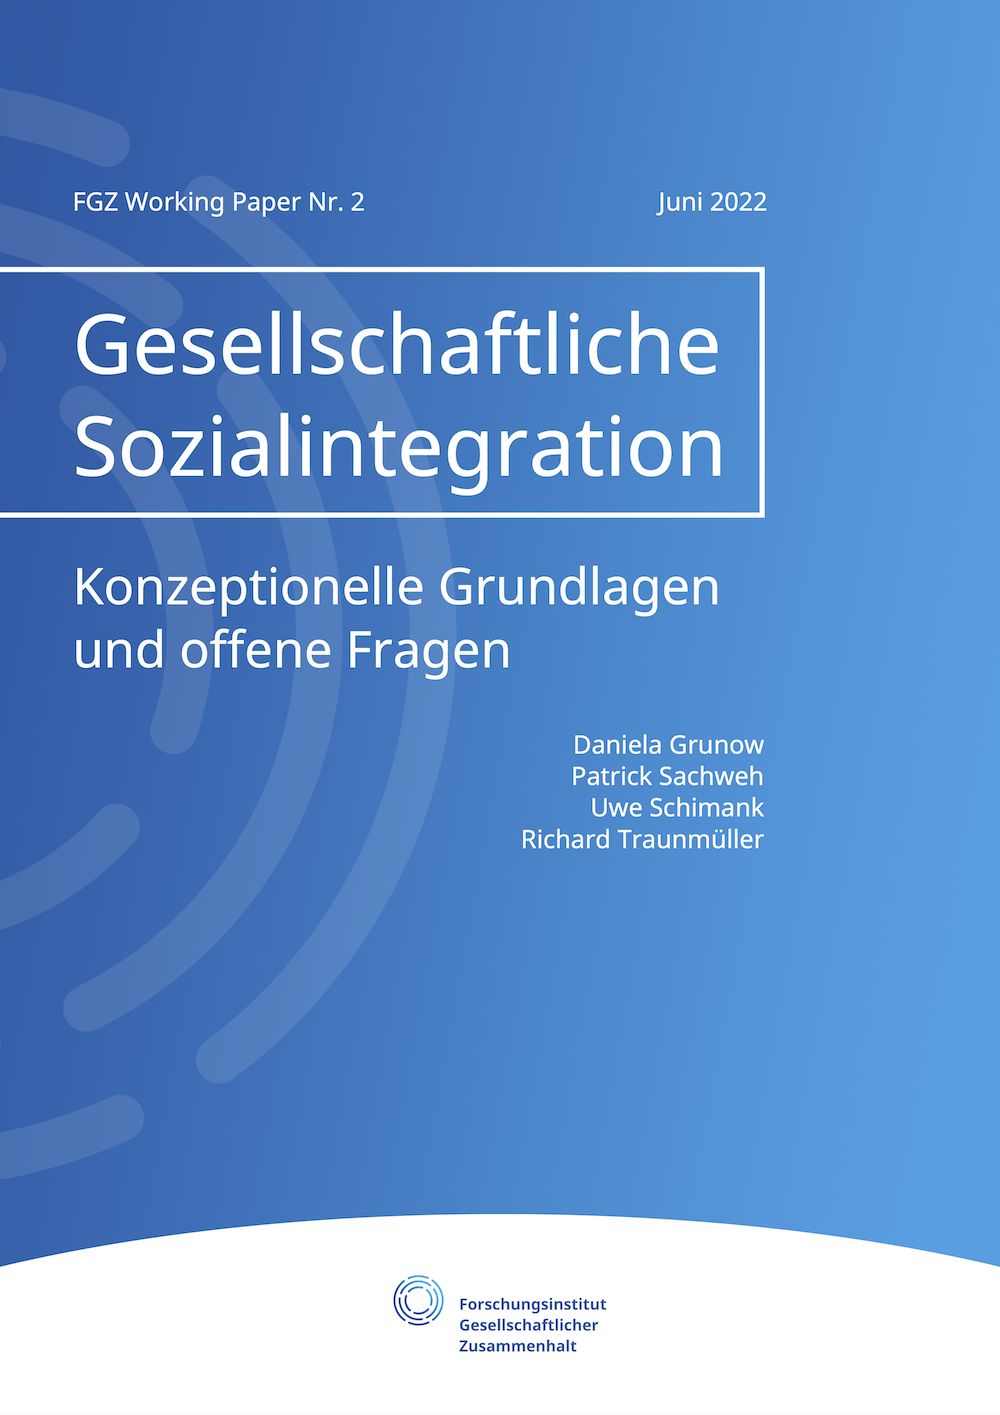 Gesellschaftliche Sozialintegration. Konzeptionelle Grundlagen und offene Fragen.